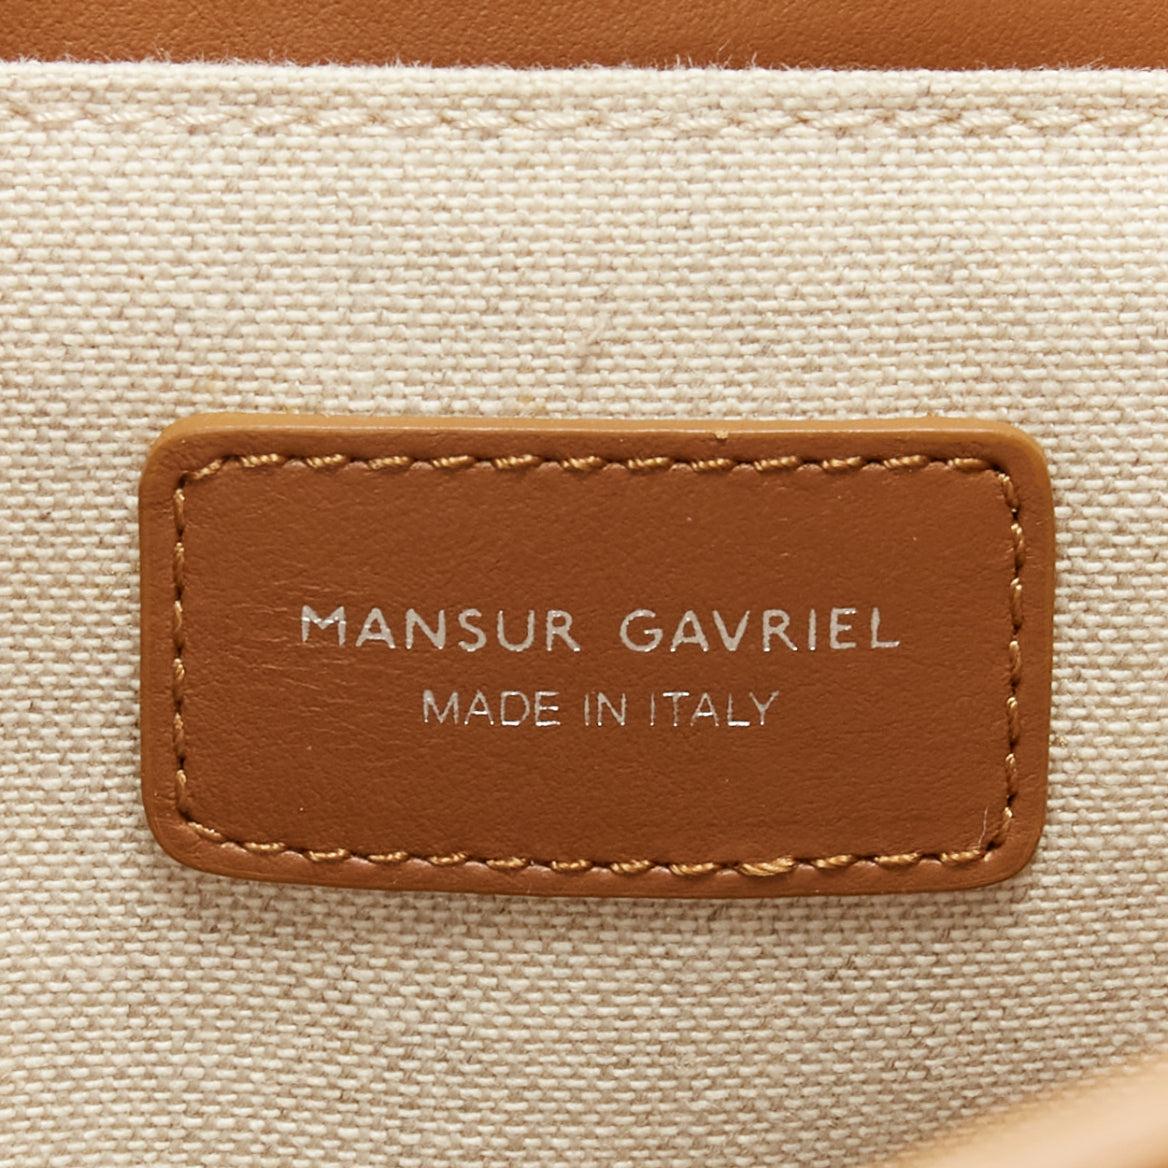 MANSUR GAVRIEL vegetable tanned calfskin leather minimal classic backpack bag 5